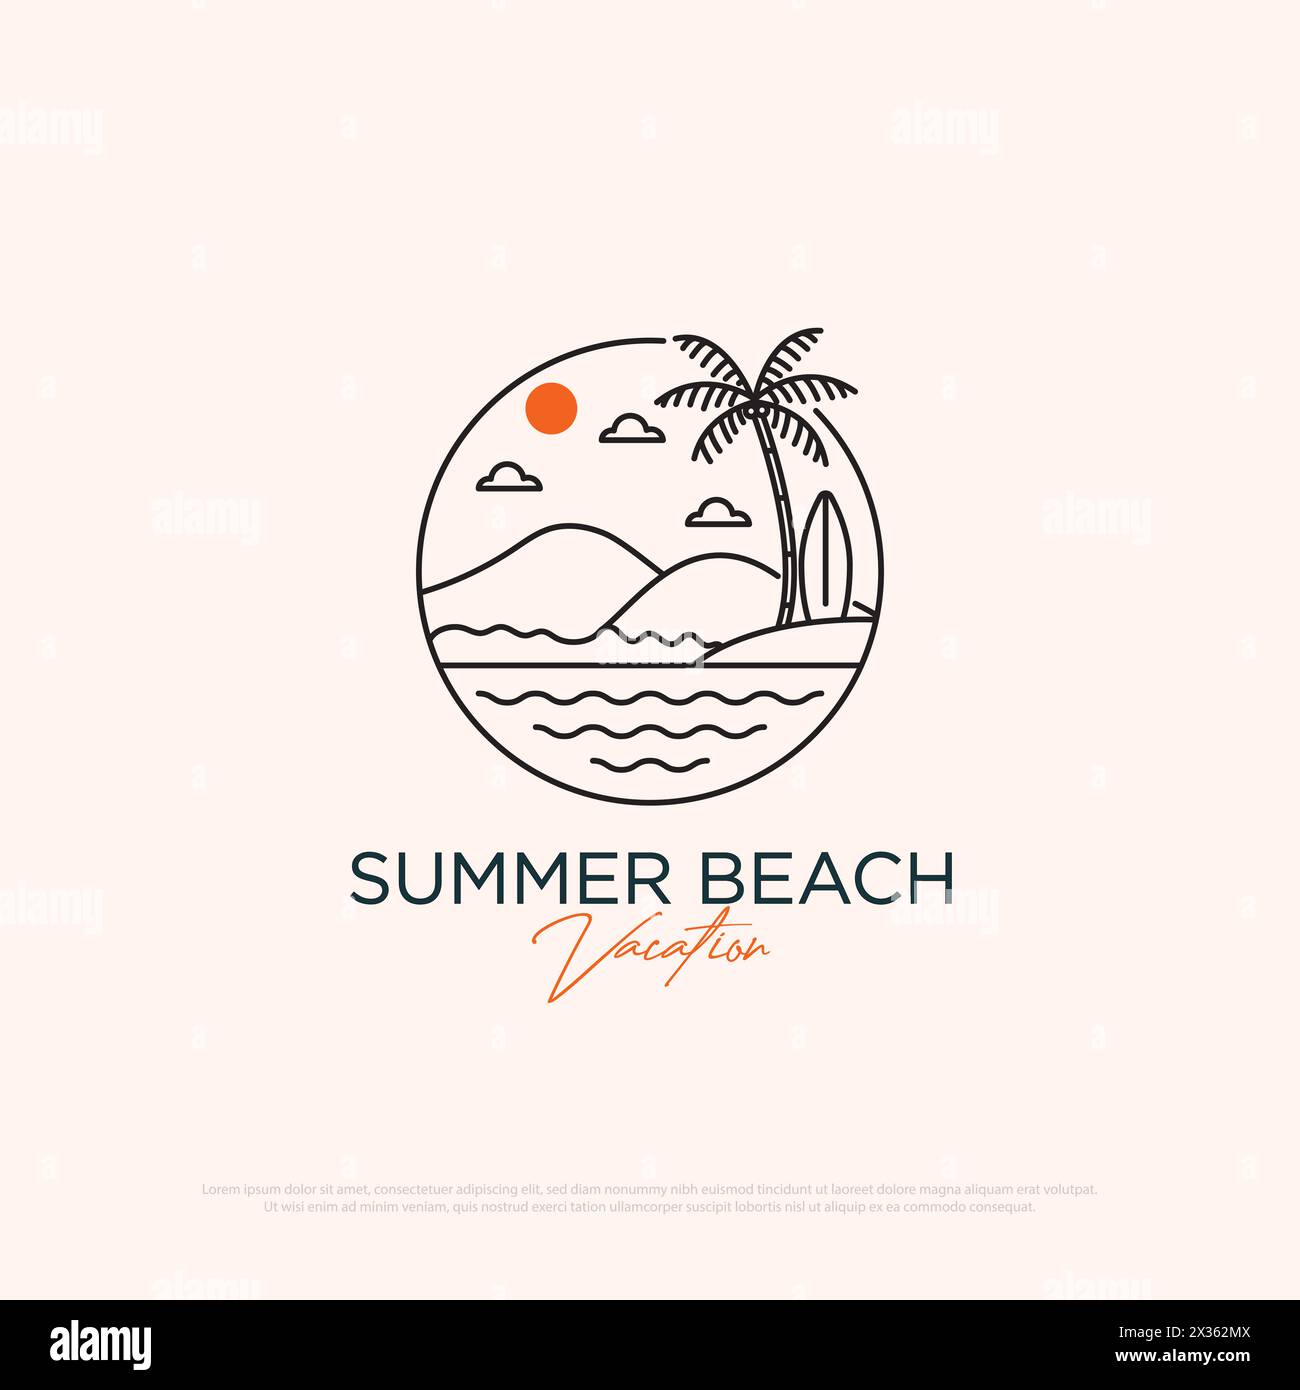 Sommer Urlaub Logo Design mit Linie Art einfache Vektor minimalistische Illustration Vorlage, Reisebüro Logo Designs Stock Vektor